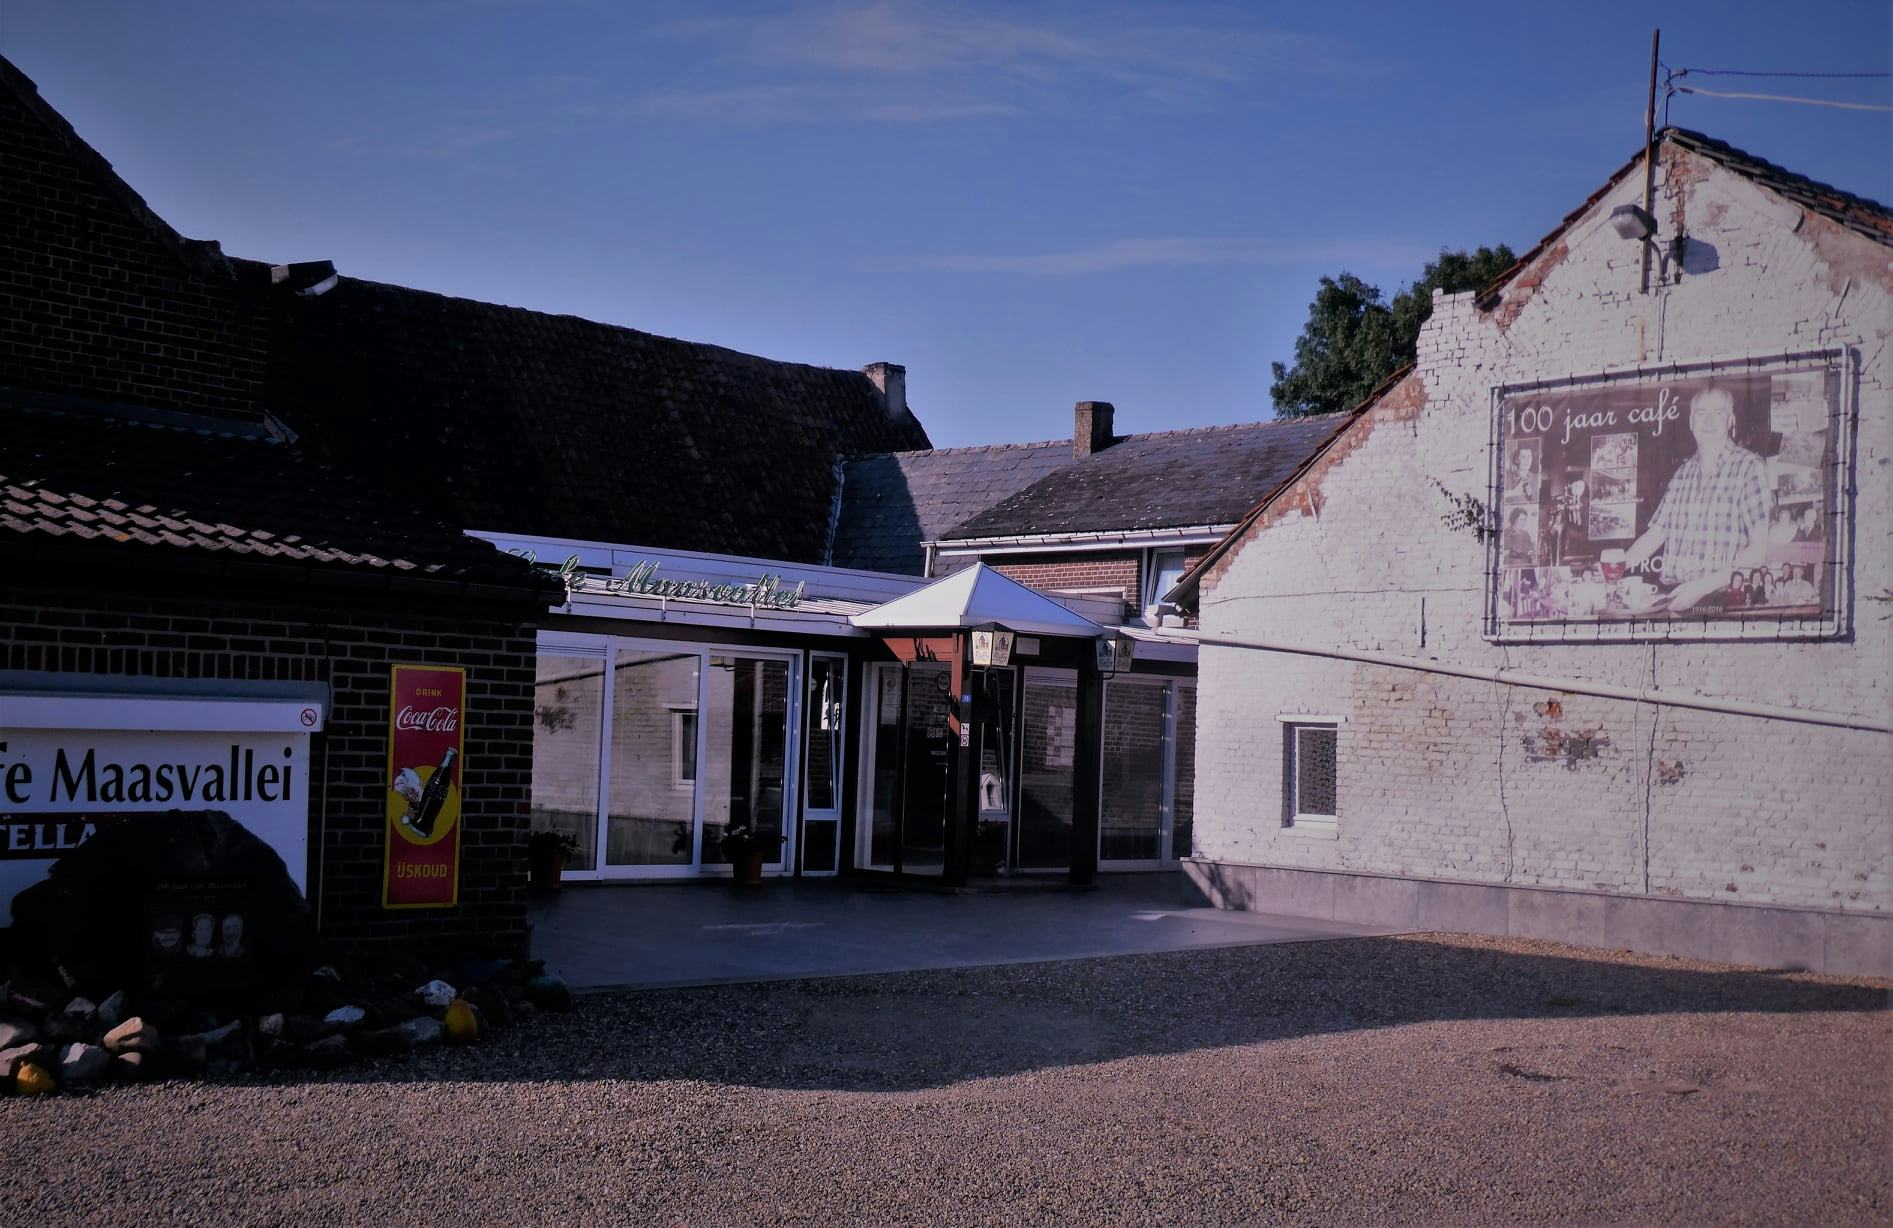 Café aan Maas sluit na 105 jaar en 21 overstromingen